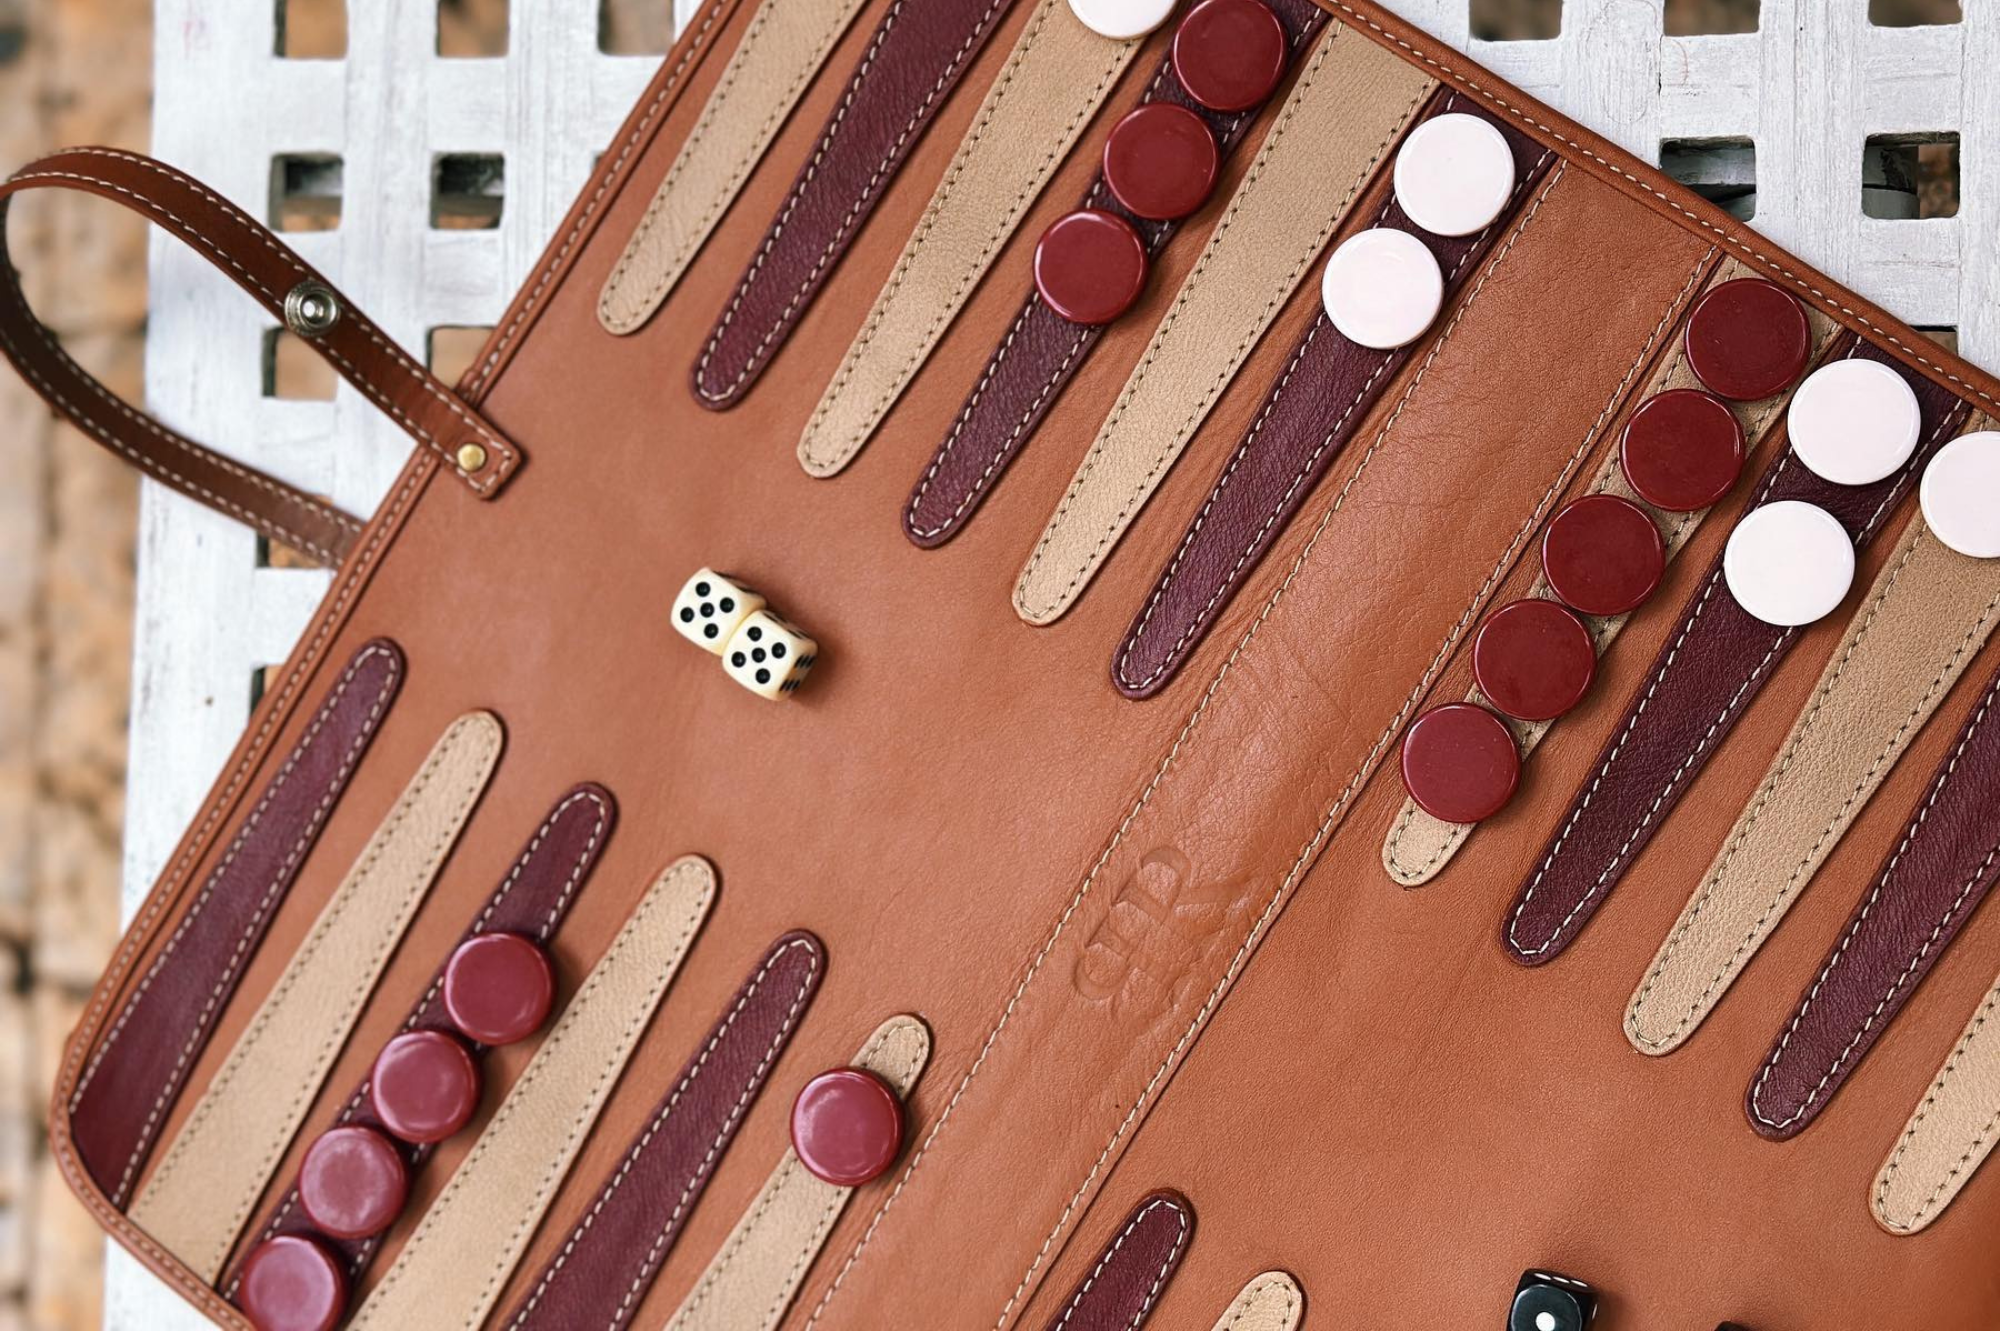 ¡El backgammon, uno de los juegos más antiguos de la historia! - BEHAR